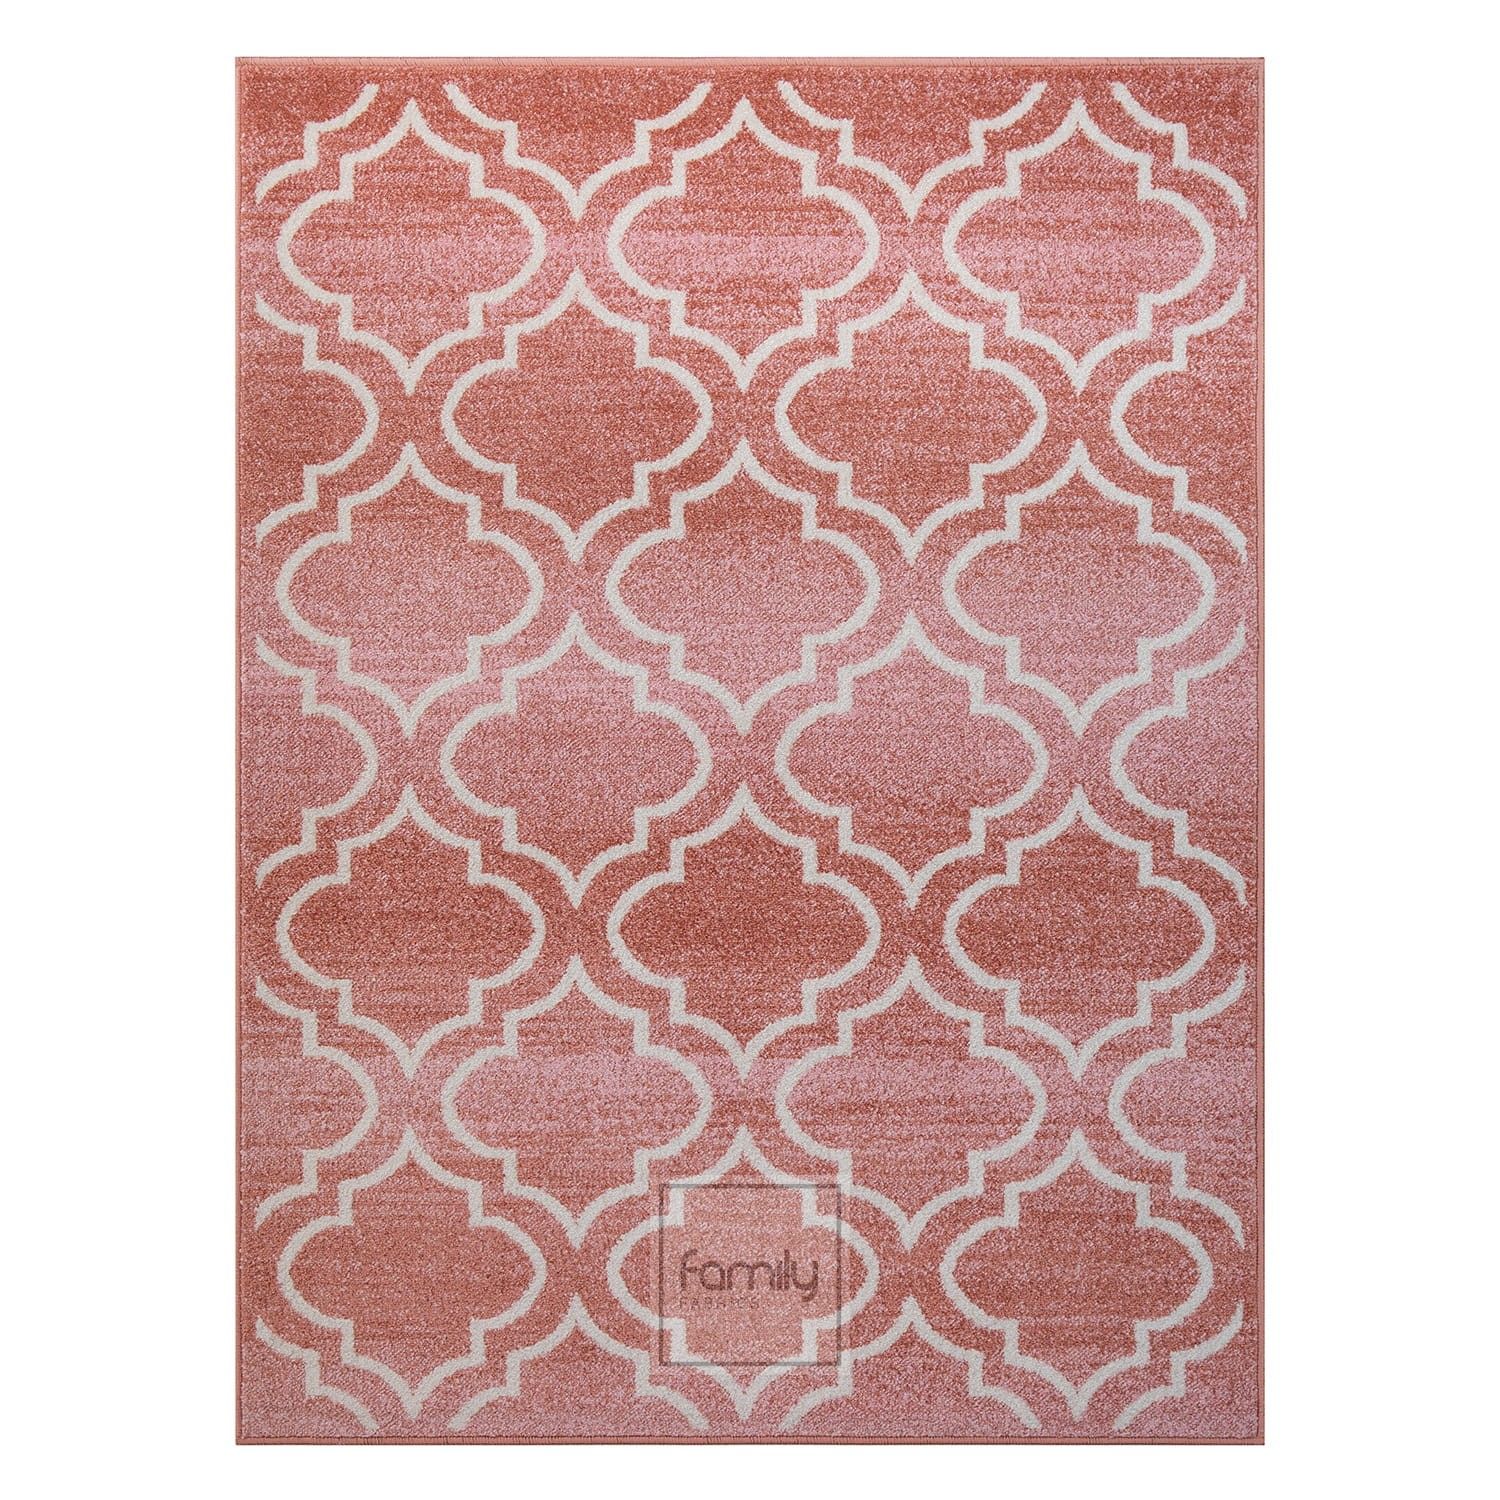 DomTextilu Originálny staroružový koberec v škandinávskom štýle 44390-234254